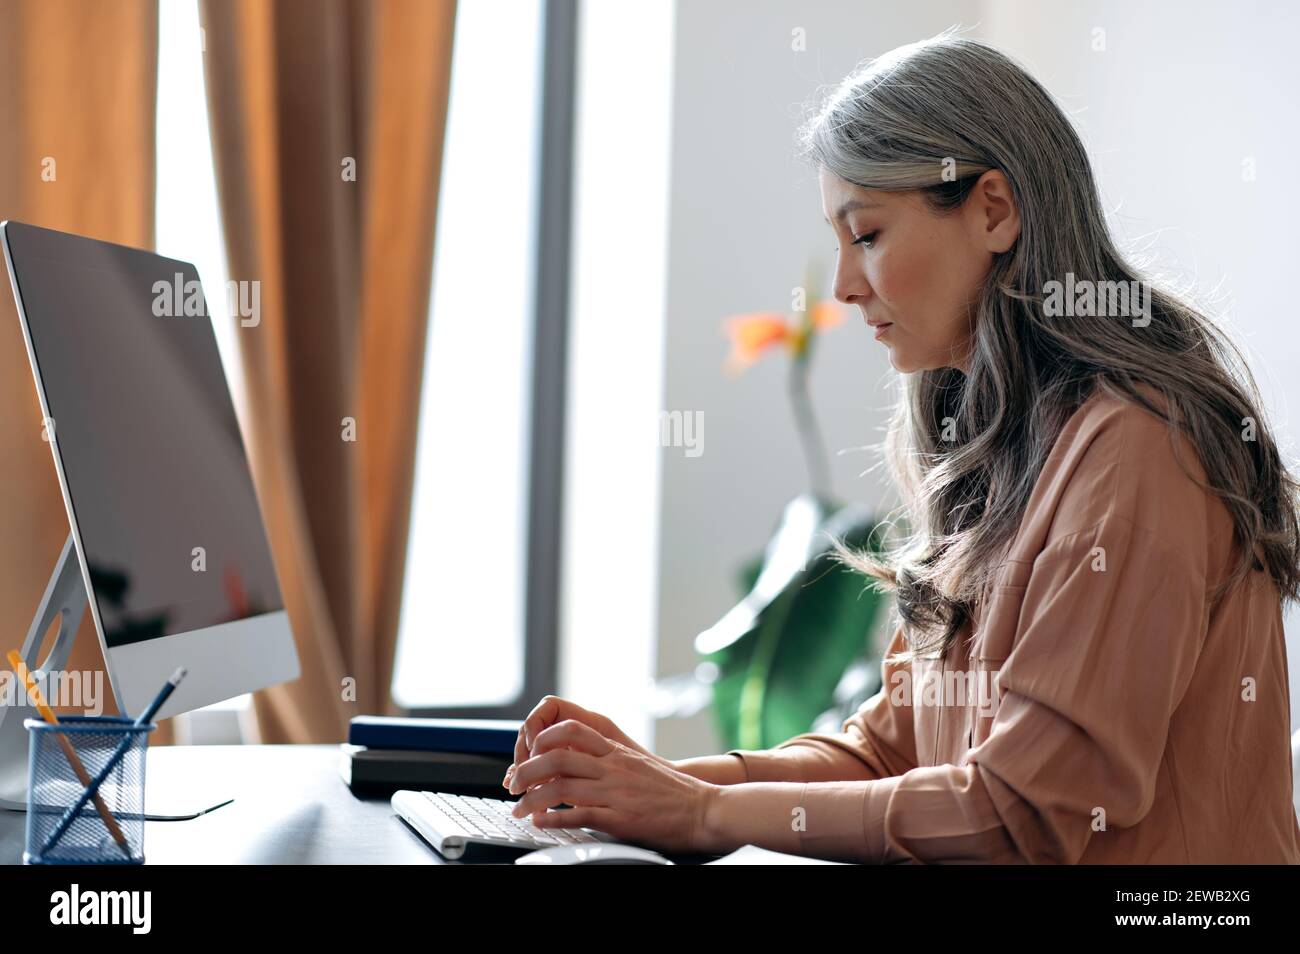 Fokussierte grauhaarige reifen asiatischen weiblichen Mitarbeiter, Manager, ceo, Arbeiten am Computer, Surfen im Internet, Ideen suchen, E-Mails beantworten, am Schreibtisch sitzen Stockfoto